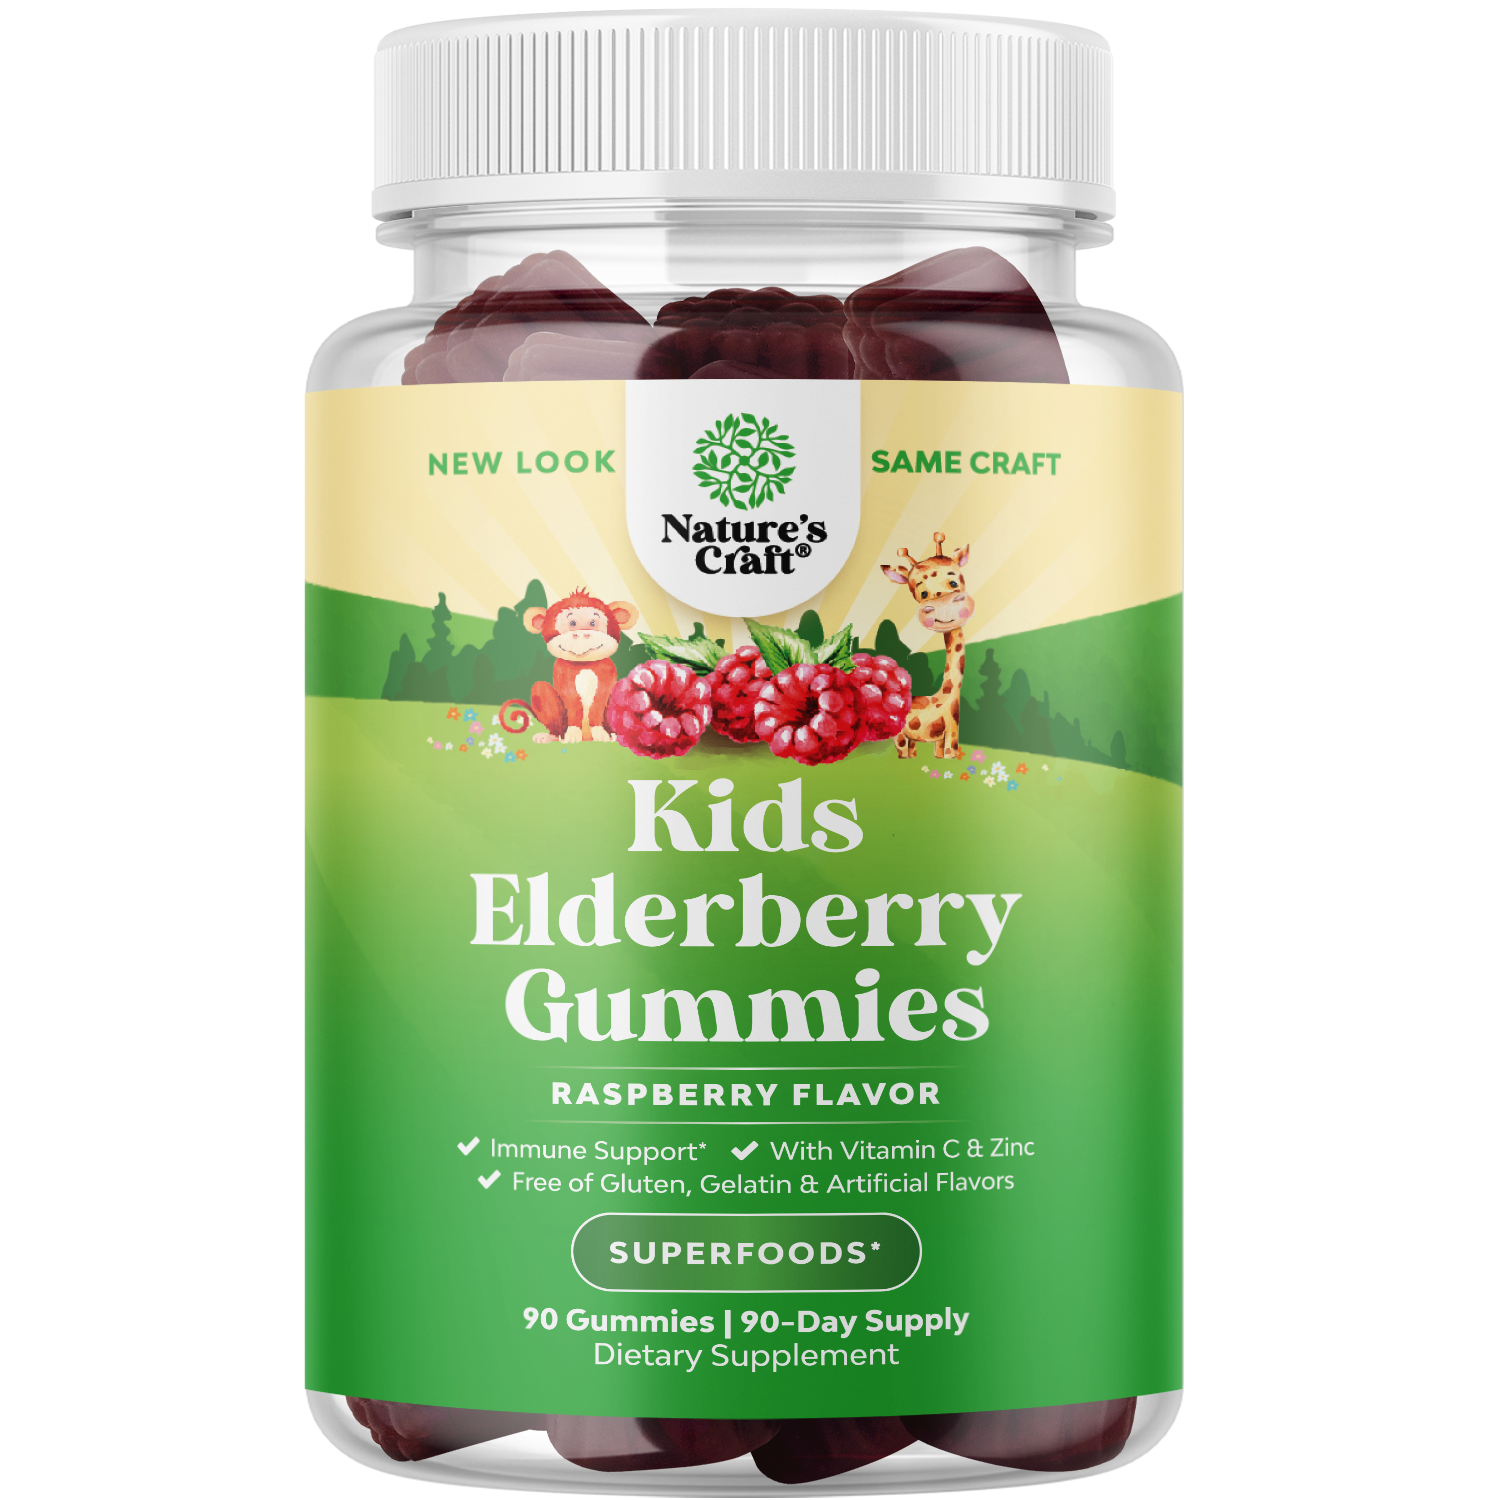 Elderberry for Kids - 90 Gummies - Nature's Craft